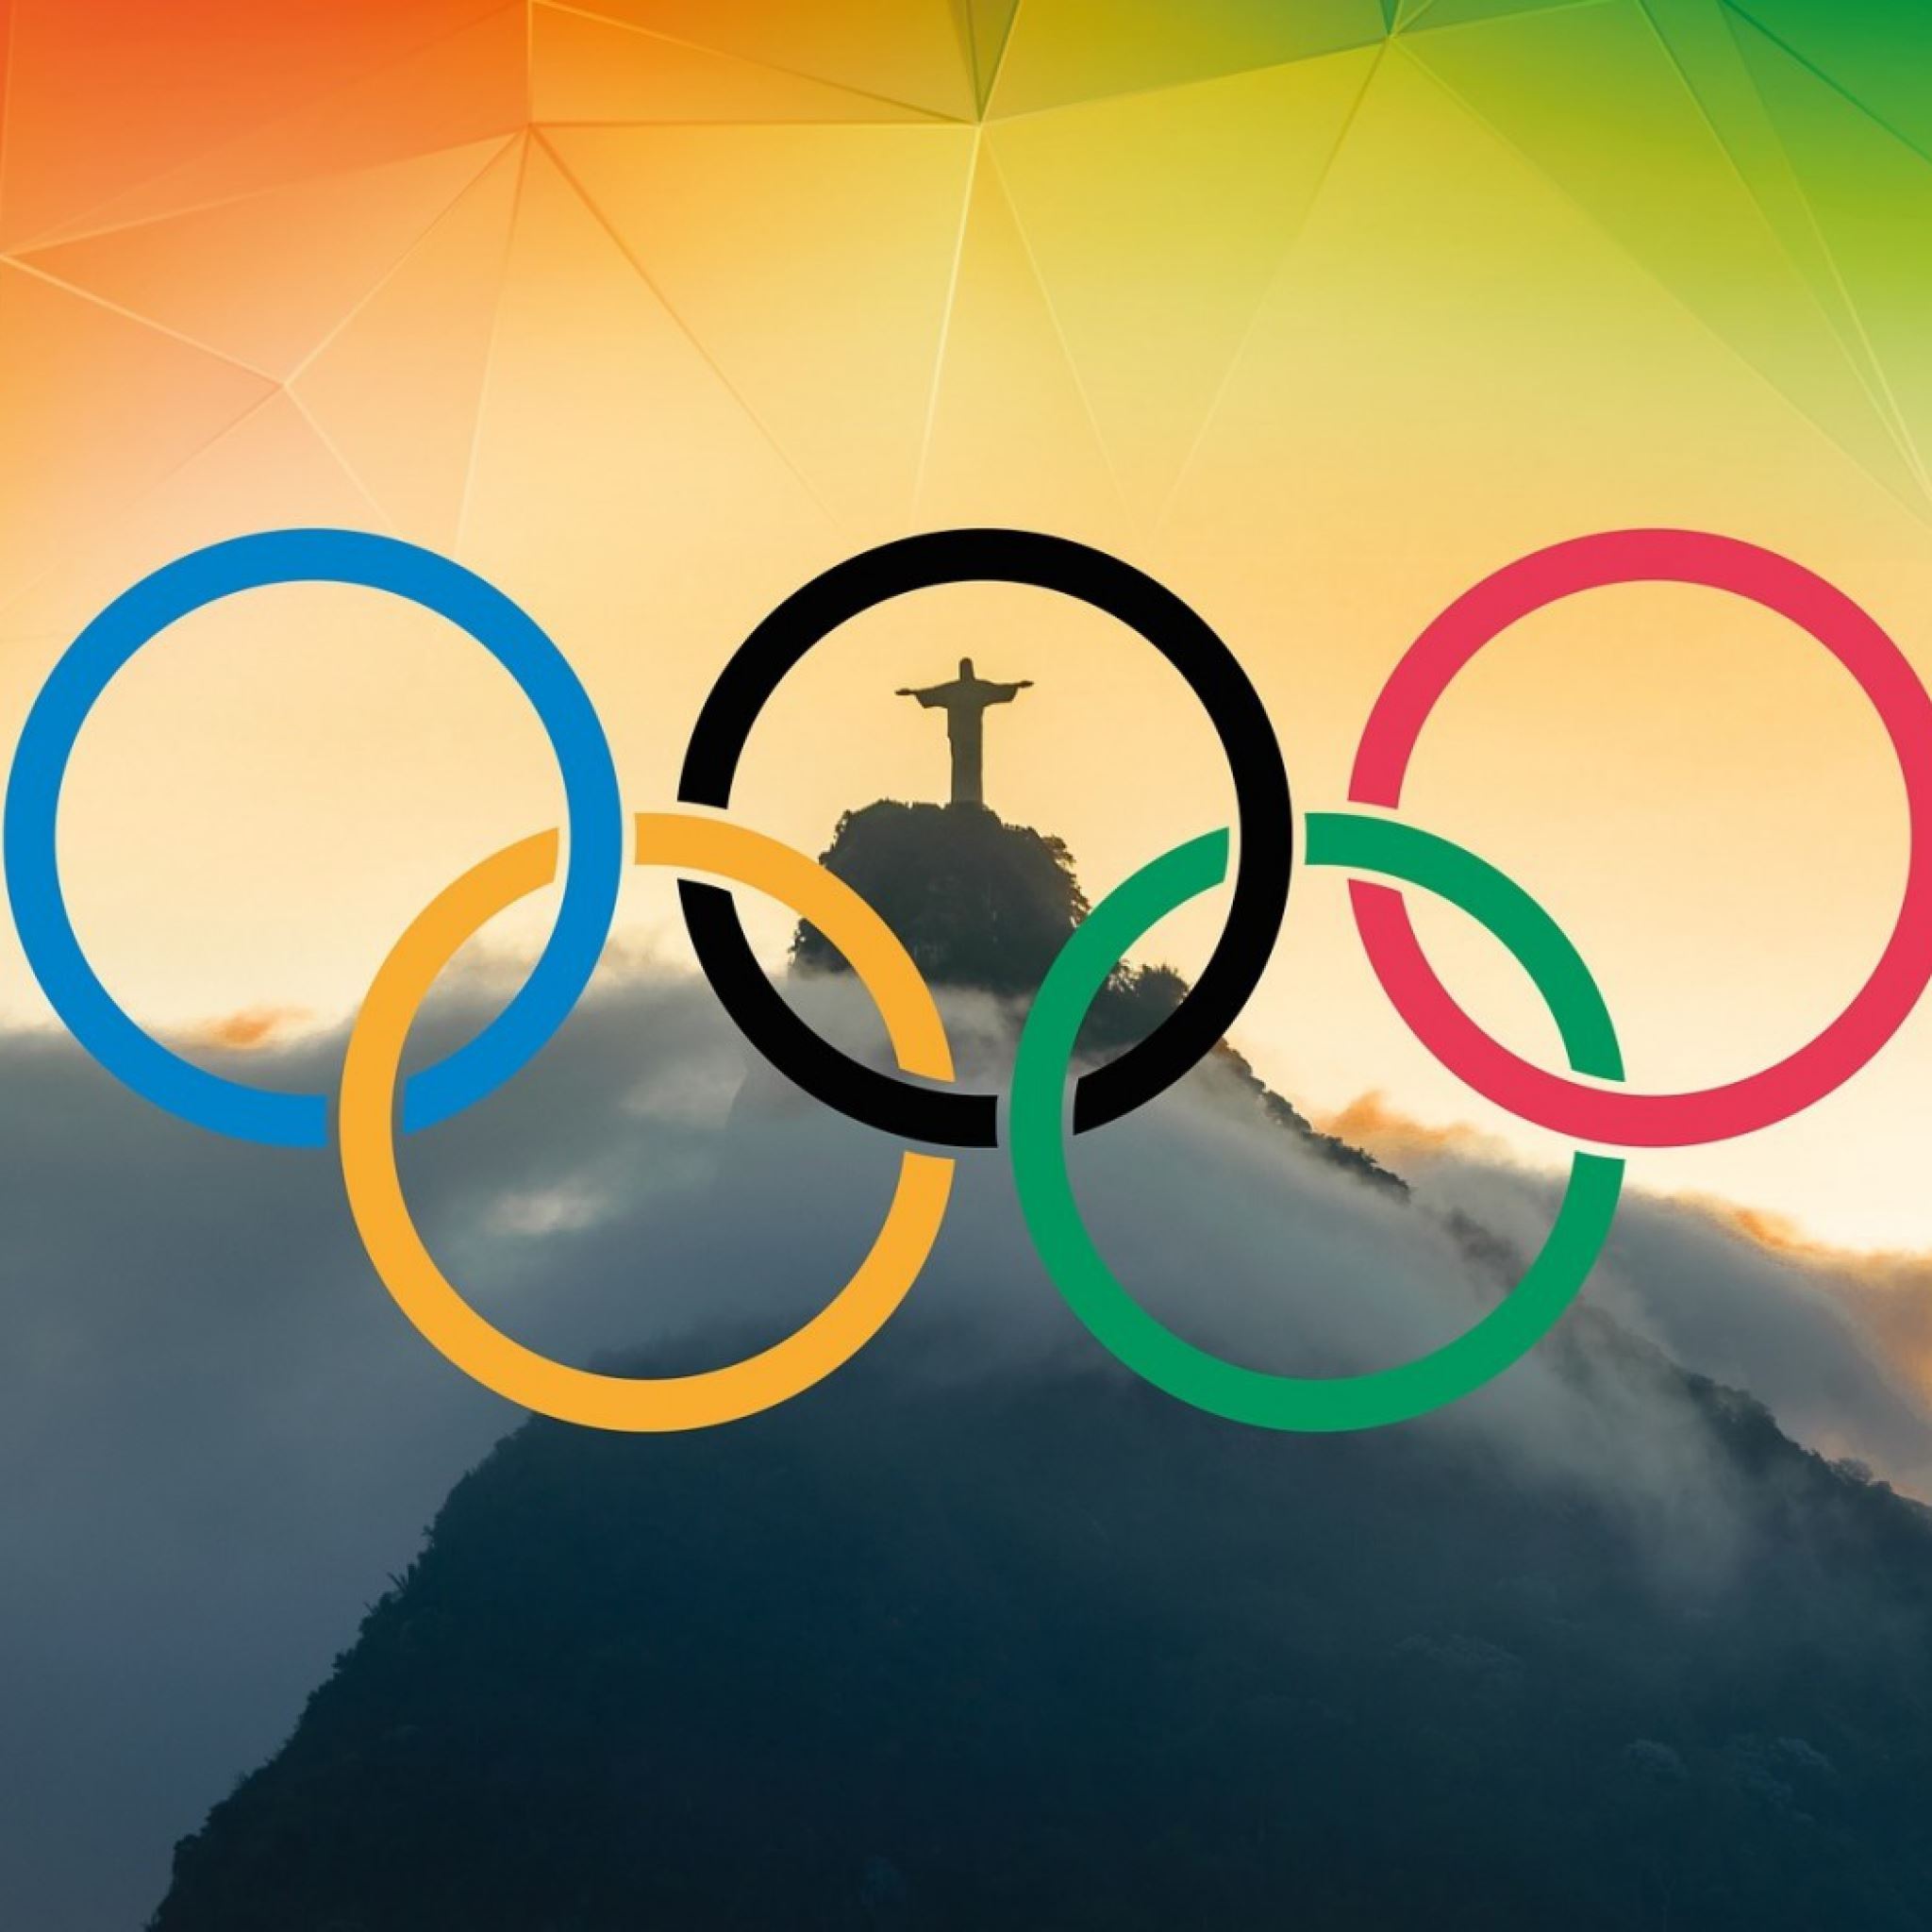 Olympic Games Rio 2016 Rio De Janeiro Brazil Corcovado iPad Air wallpaper 